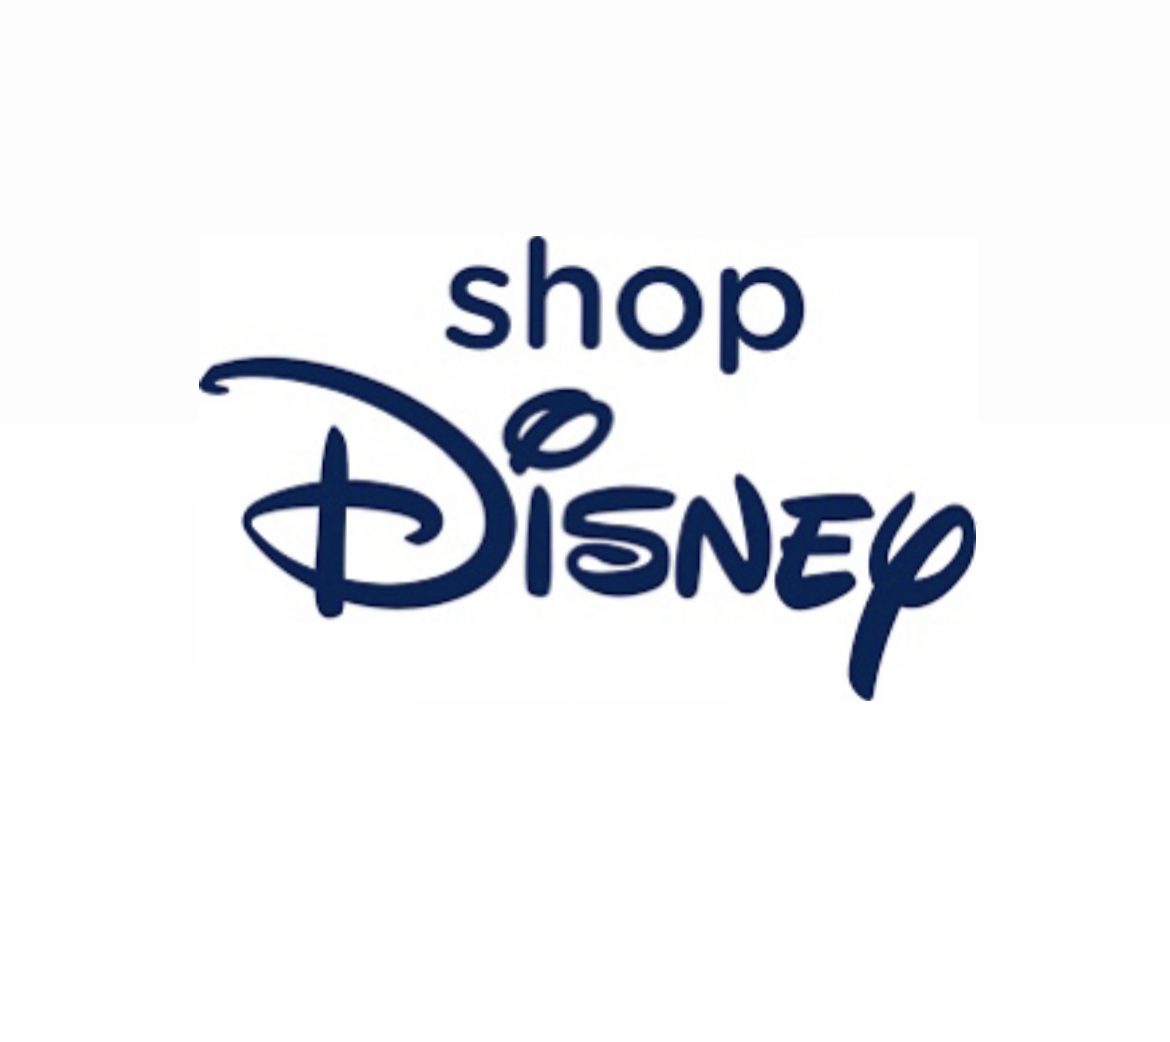 SHOP DISNEY - магазин з брендованими товарами компанії DISNEY thumbnail